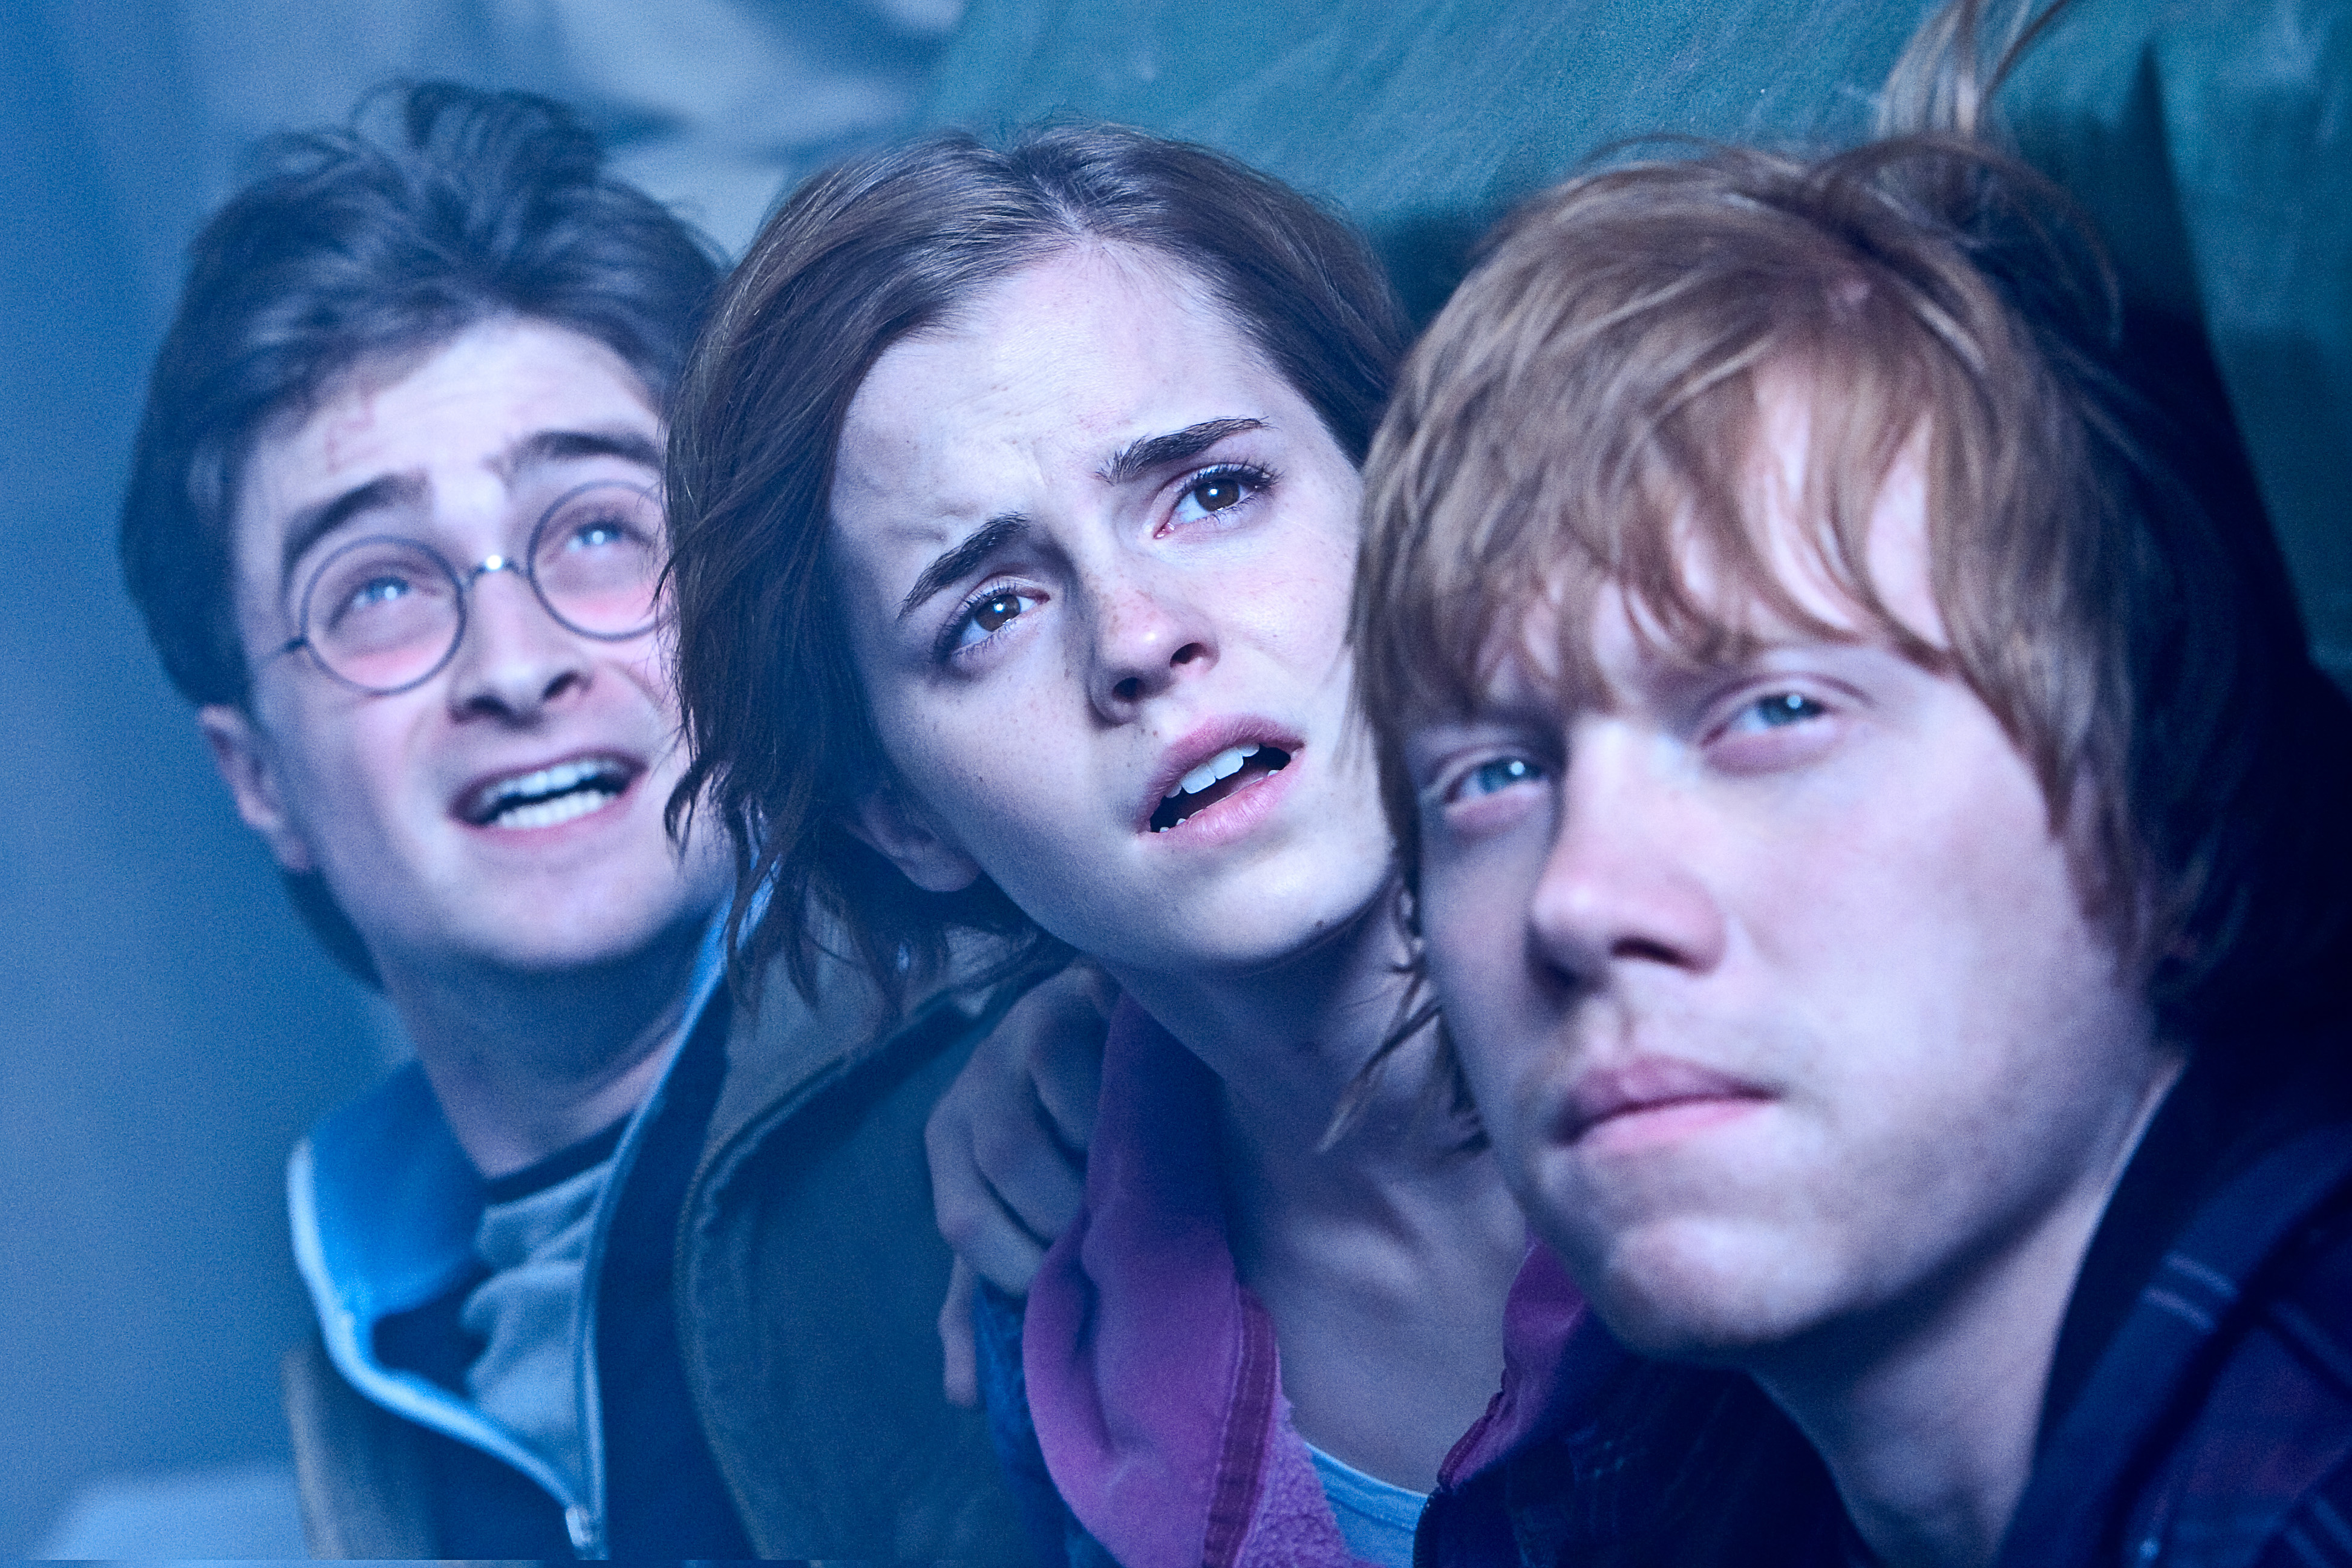 Завтра украинская премьера фильма “Гарри Поттер: Дары смерти-2” (ФОТО)